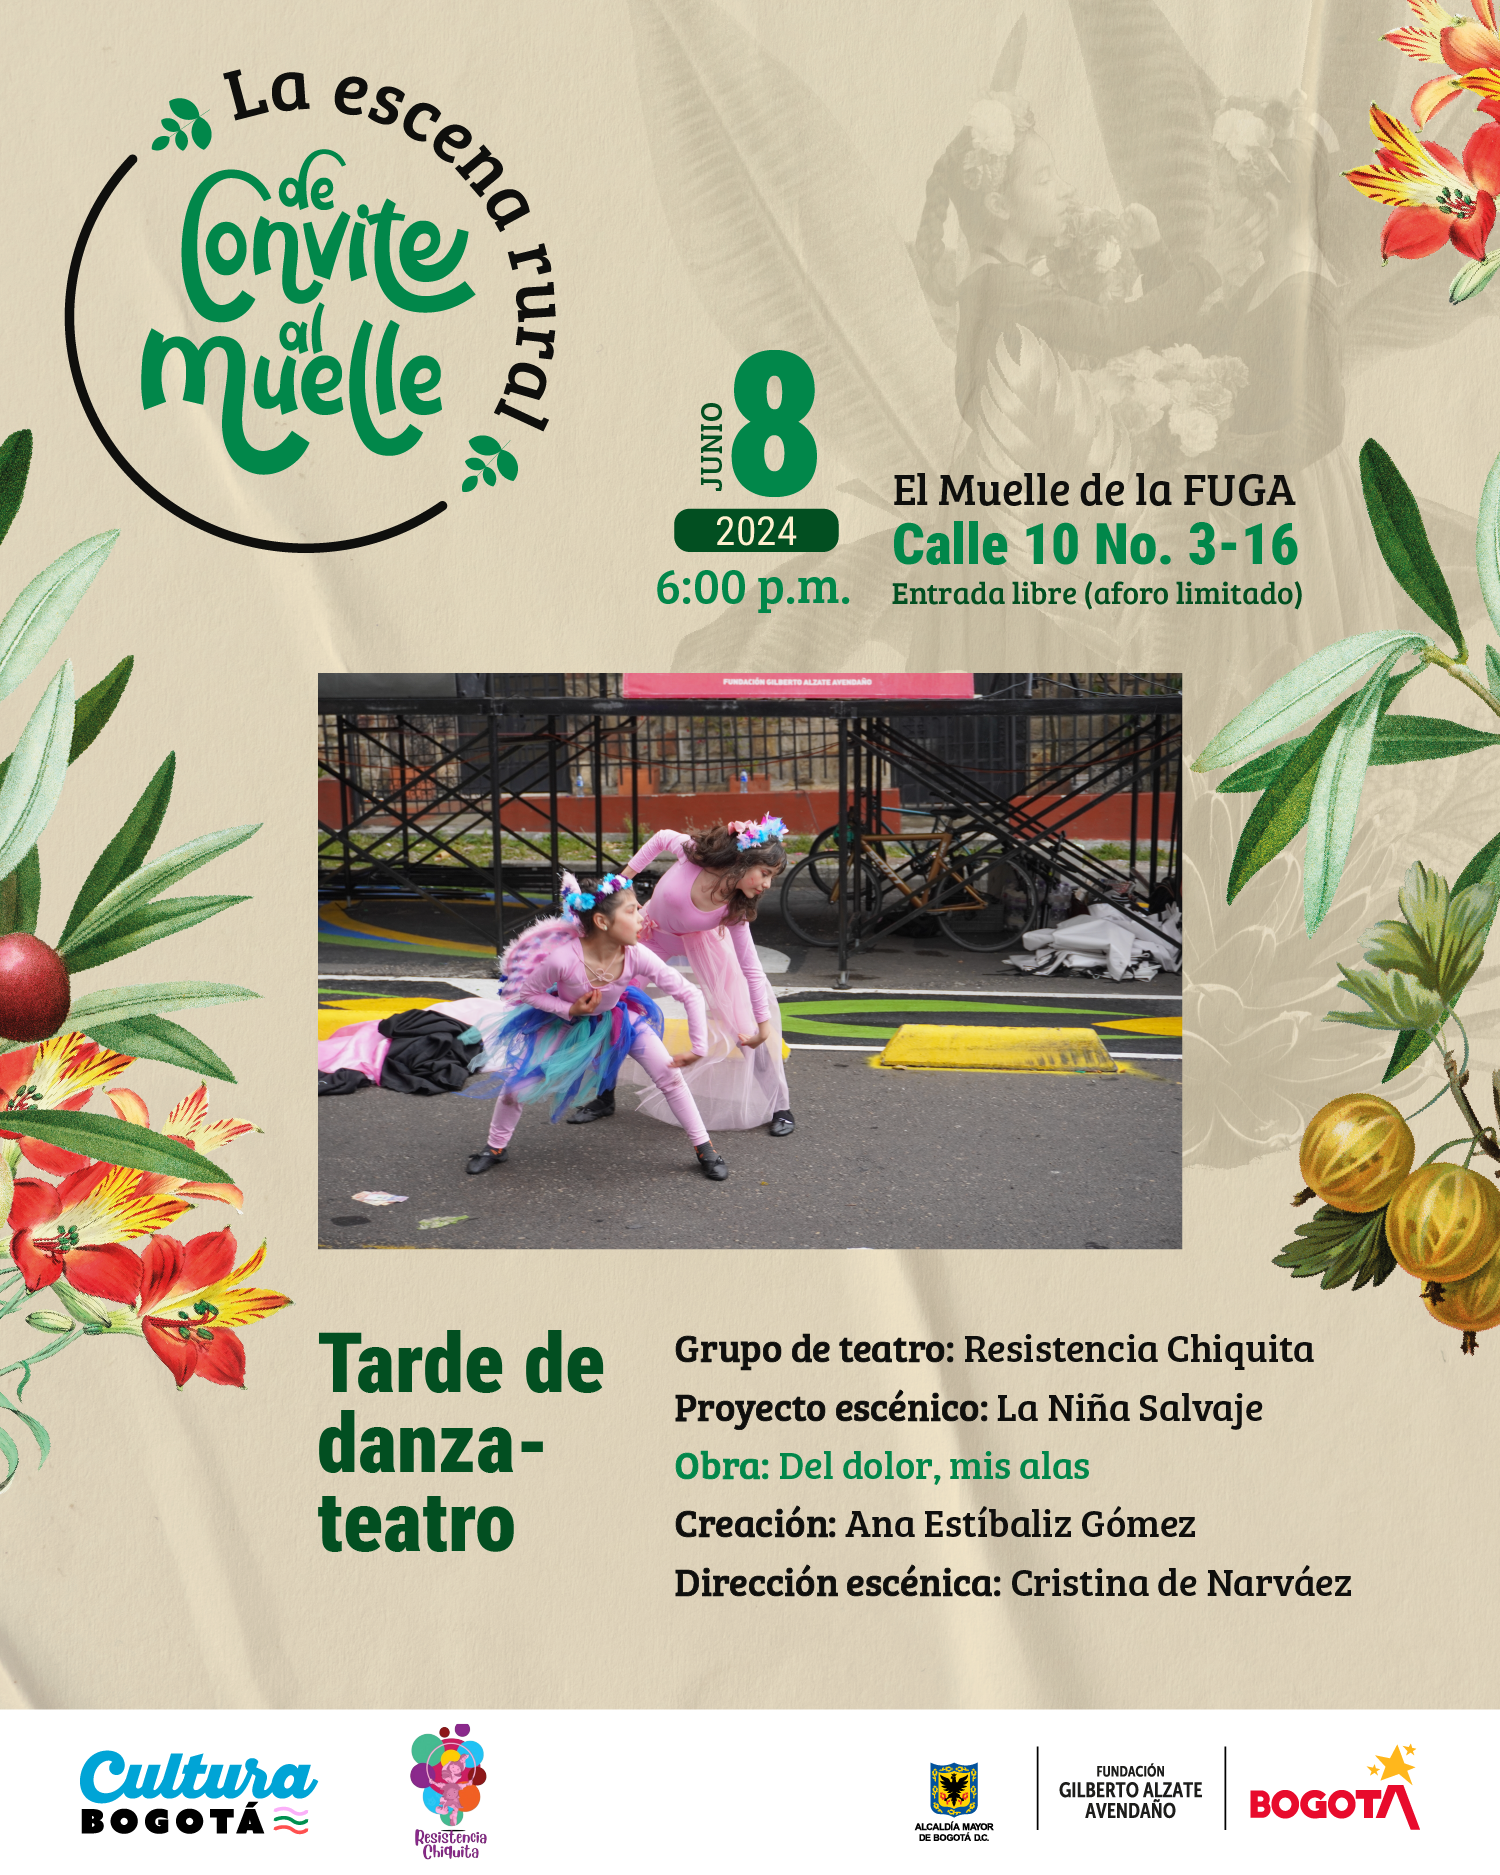 Grupo de teatro: Resistencia Chiquita